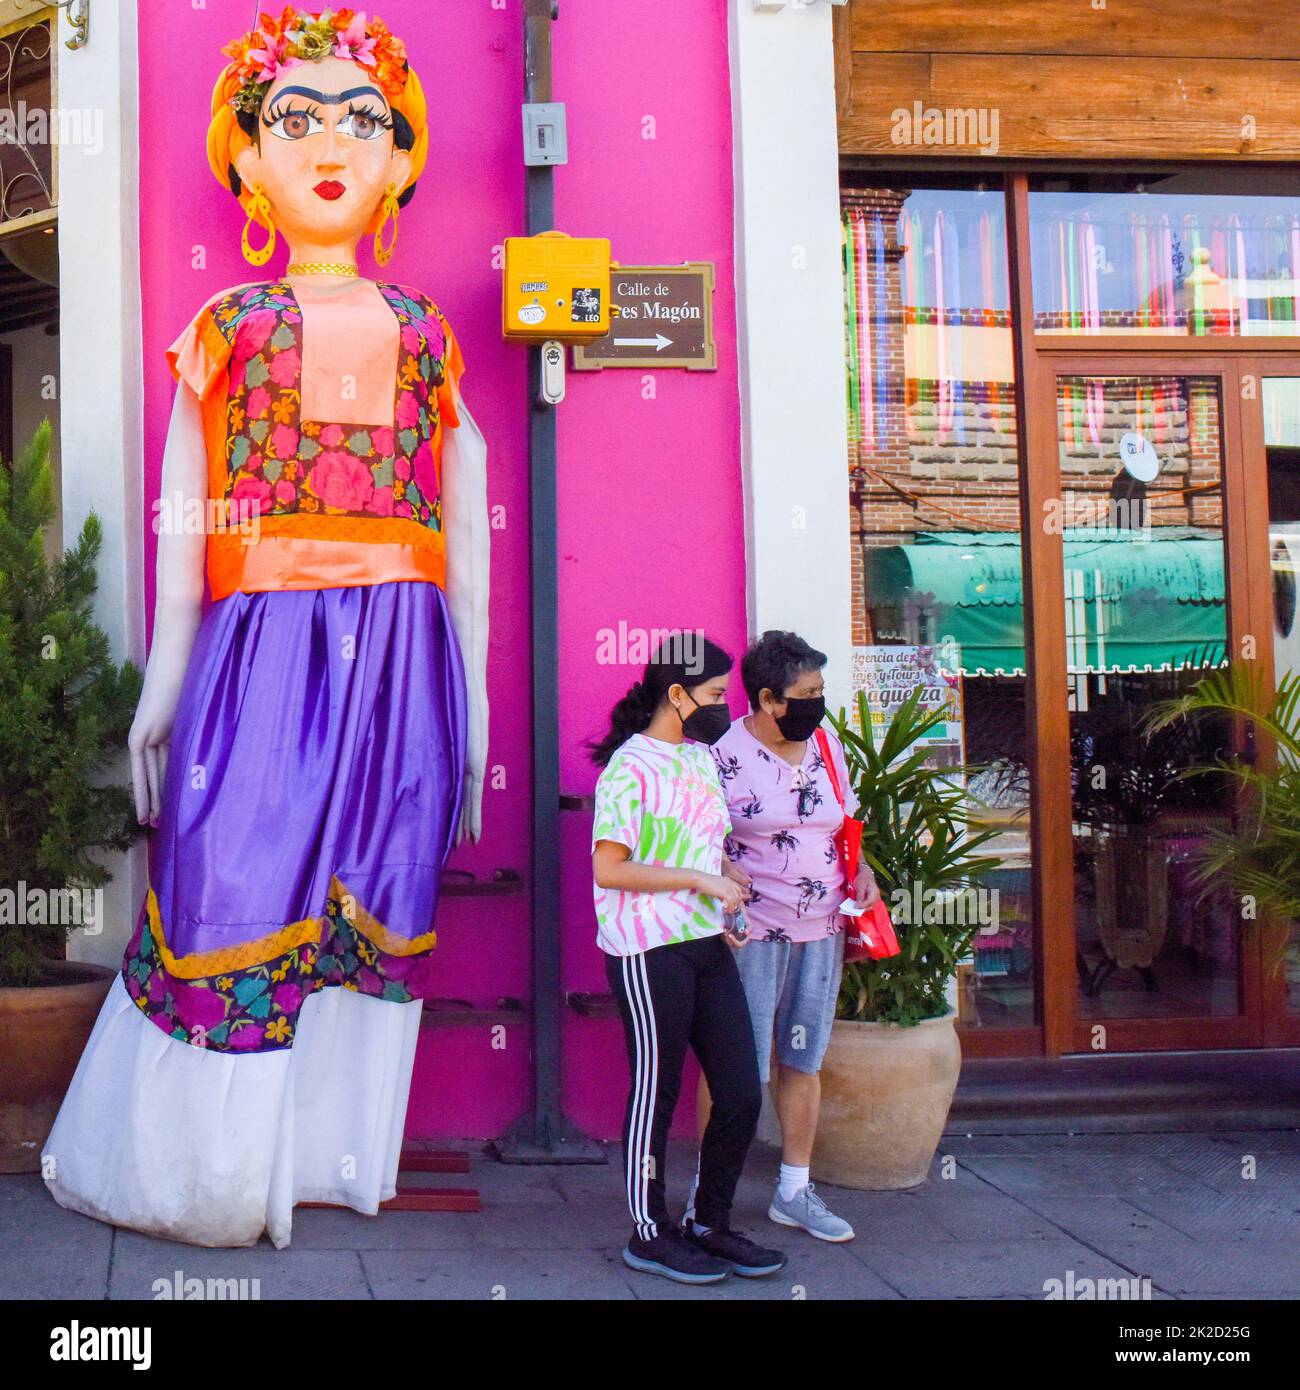 Persone che indossano maschere facciali e una bambola gigante papier mache, nel centro di Oaxaca città, Messico Foto Stock